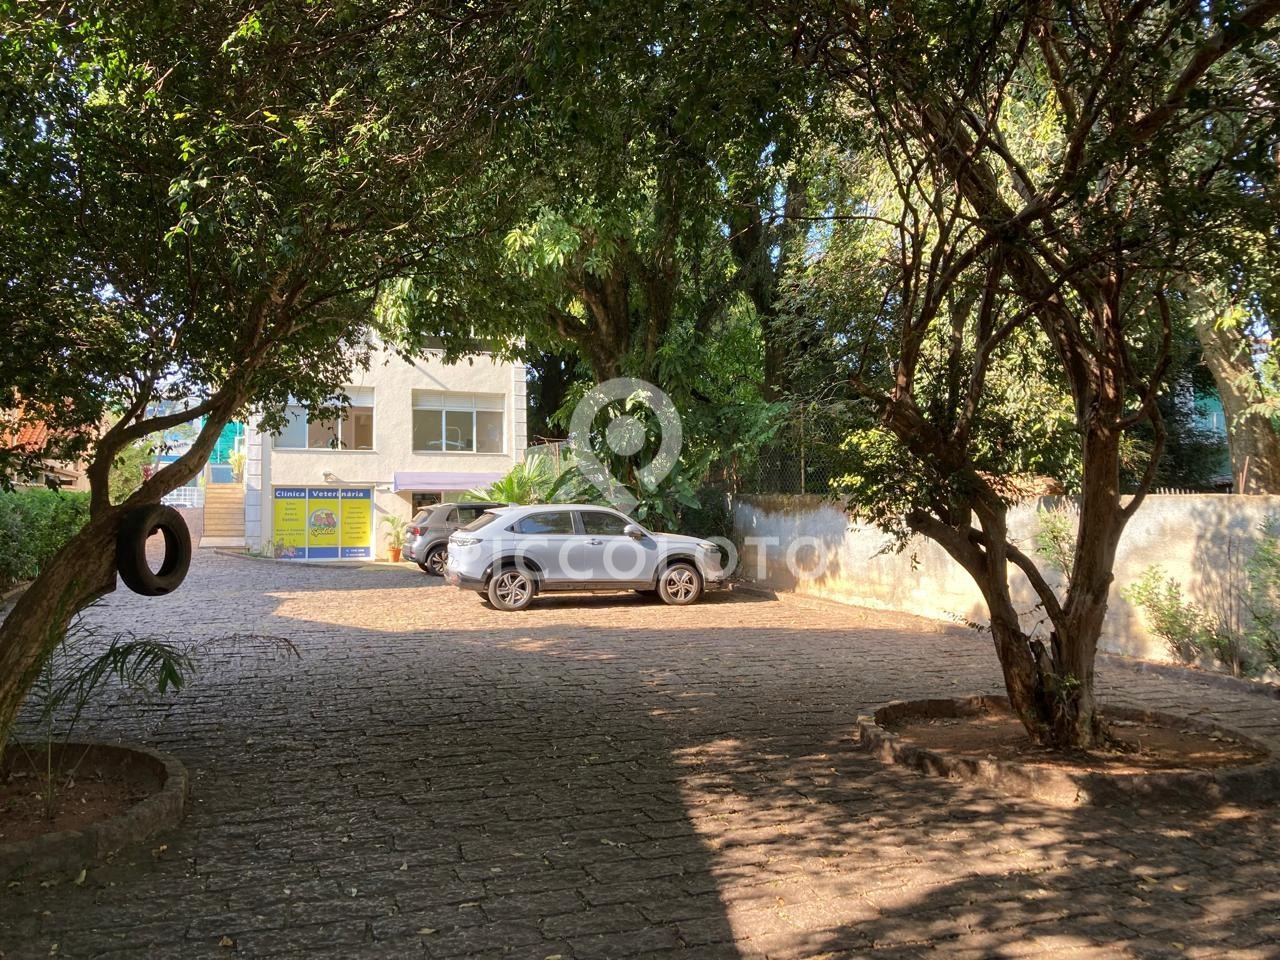 Piccoloto -Prédio à venda no Jardim Conceição (Sousas) em Campinas